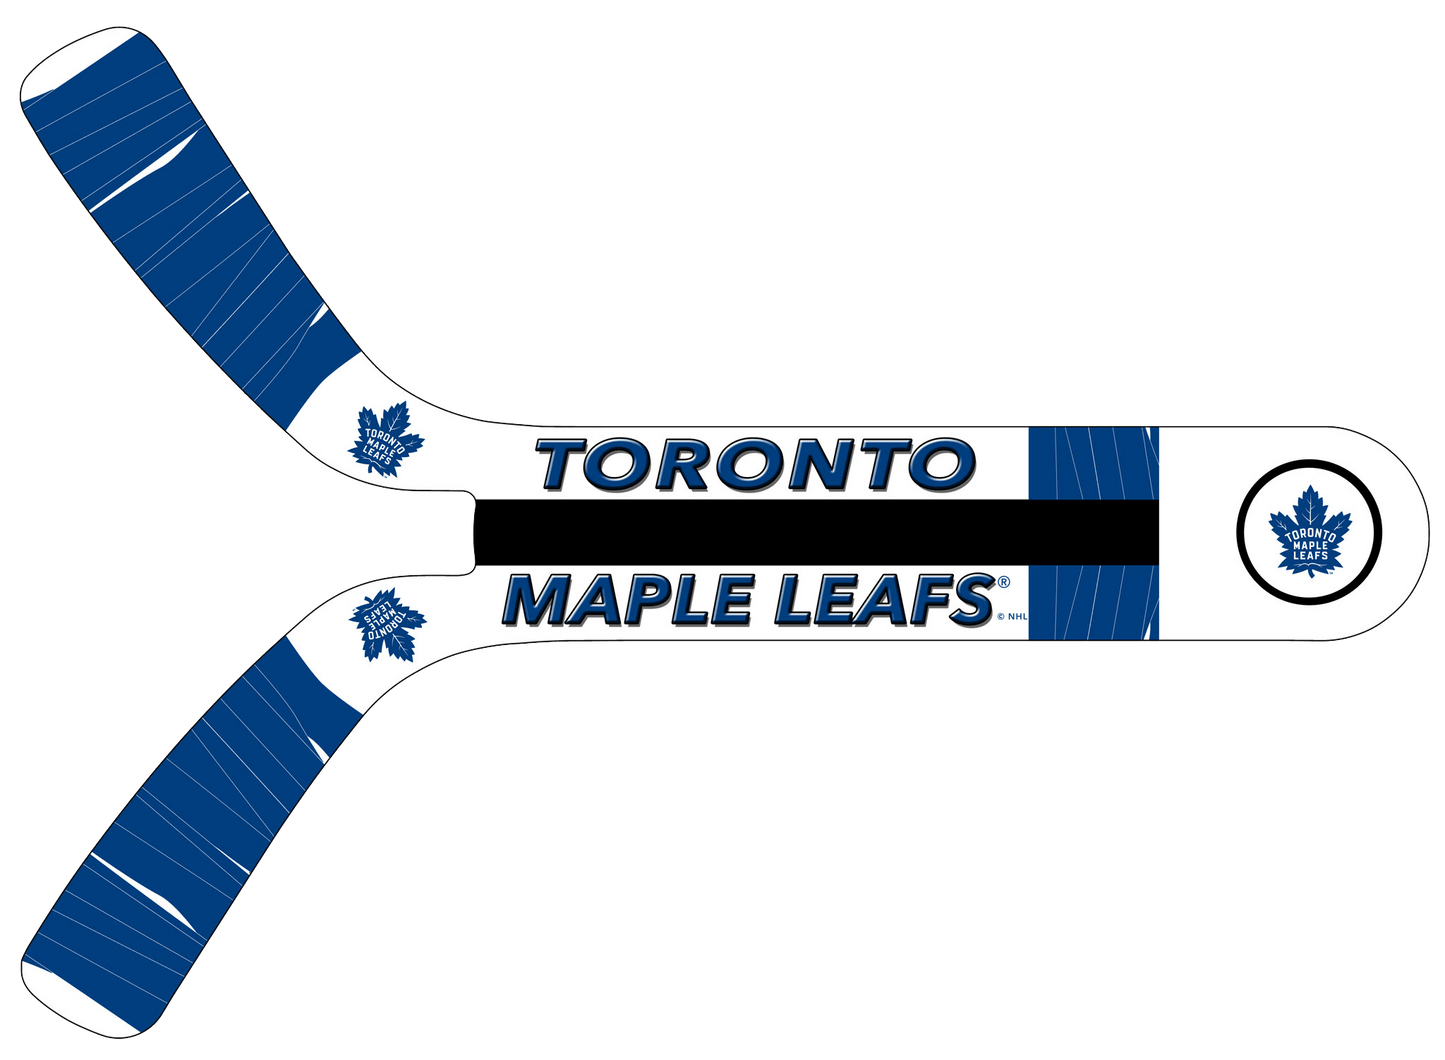 Toronto Maple Leafs® Fan Blades